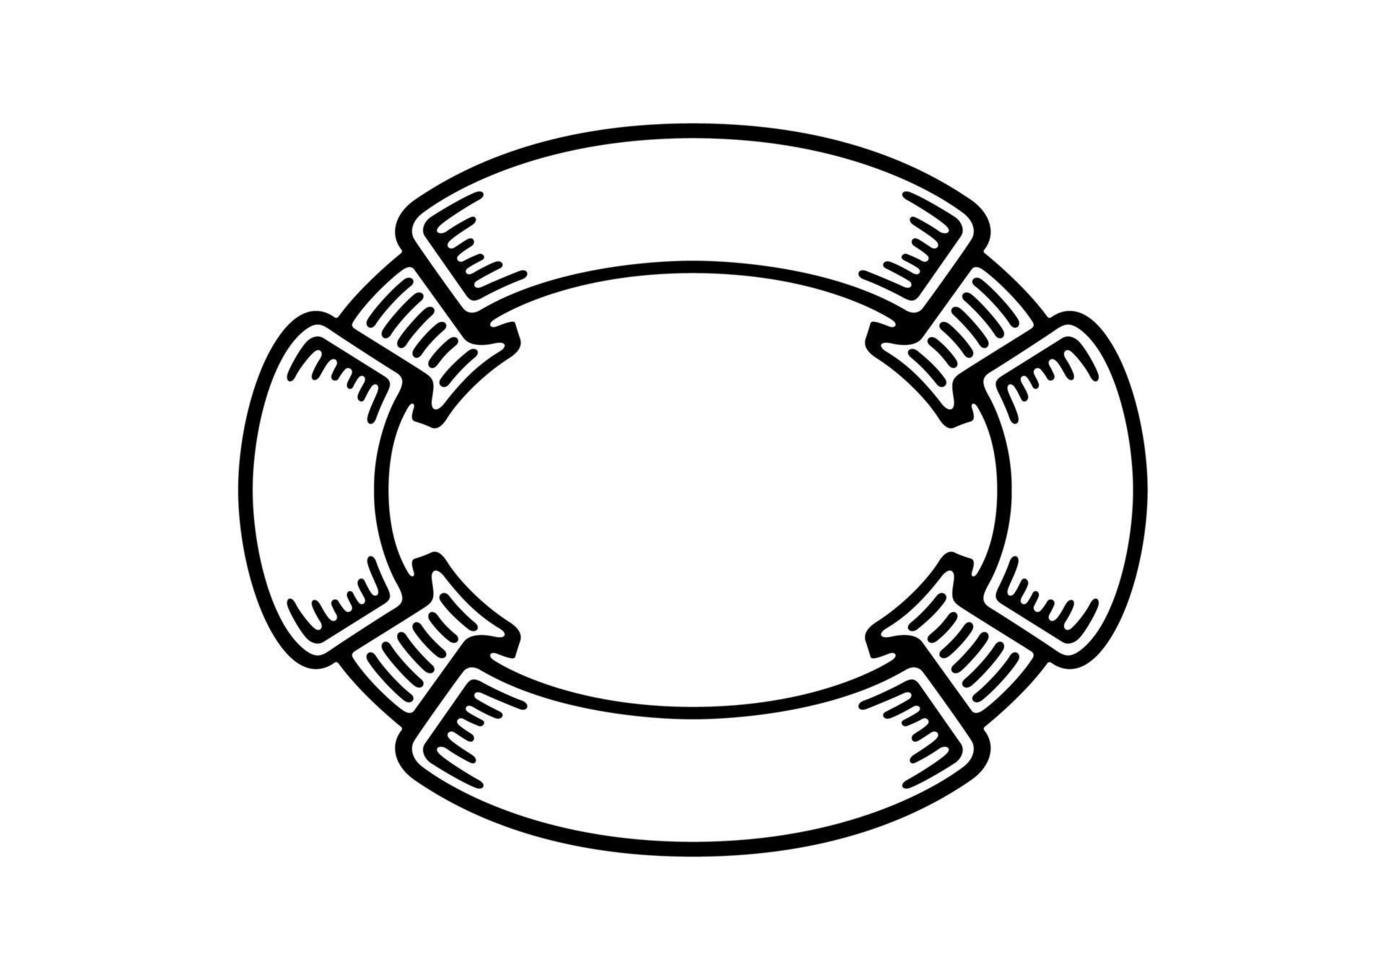 bannières de ruban vintage avec forme ovale circulaire, ensemble dessiné à la main vecteur